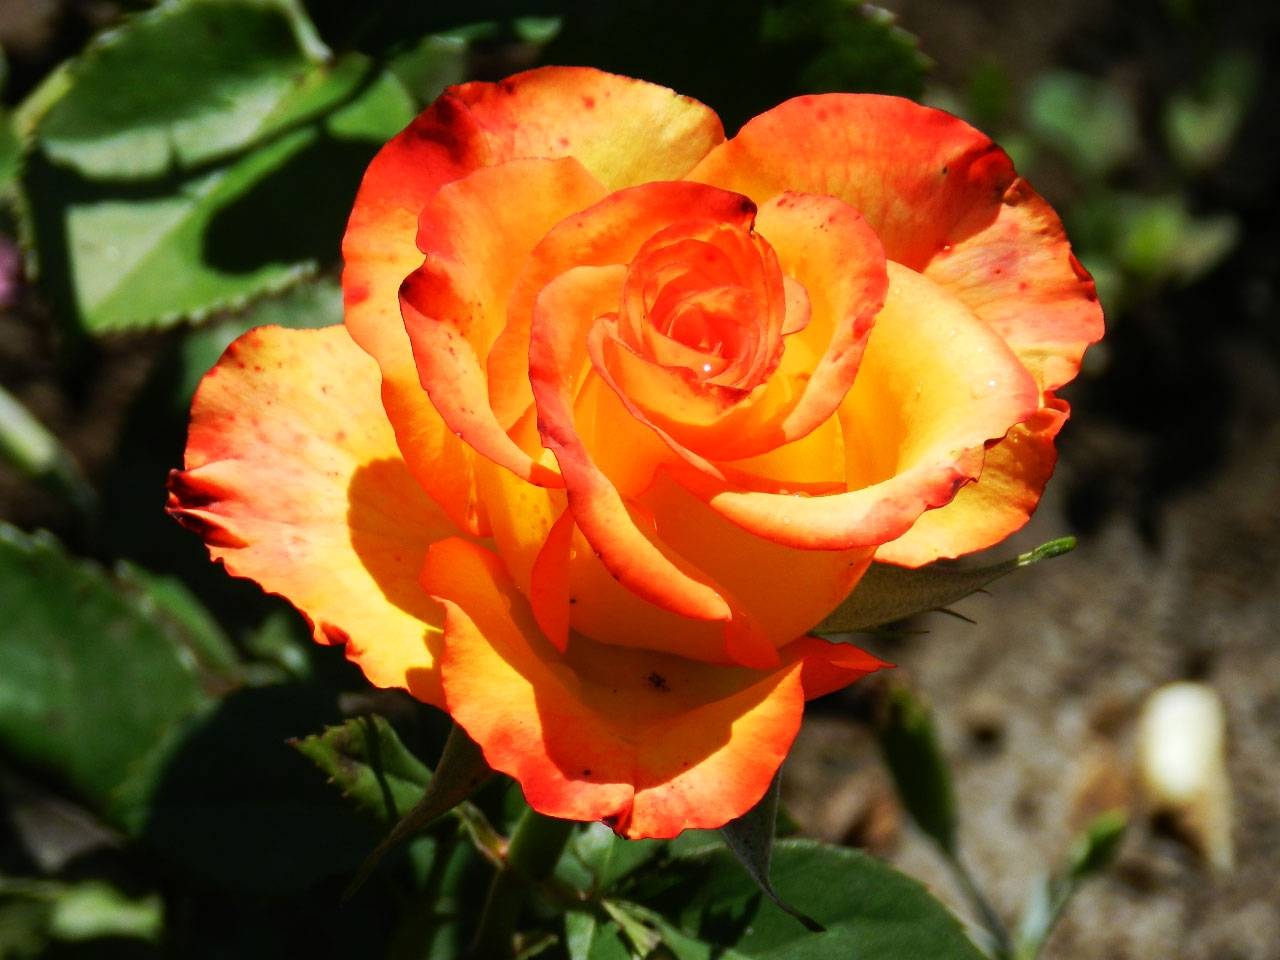 Характеристики сорта чайно-гибридной розы хай мэджик оранж: период цветения